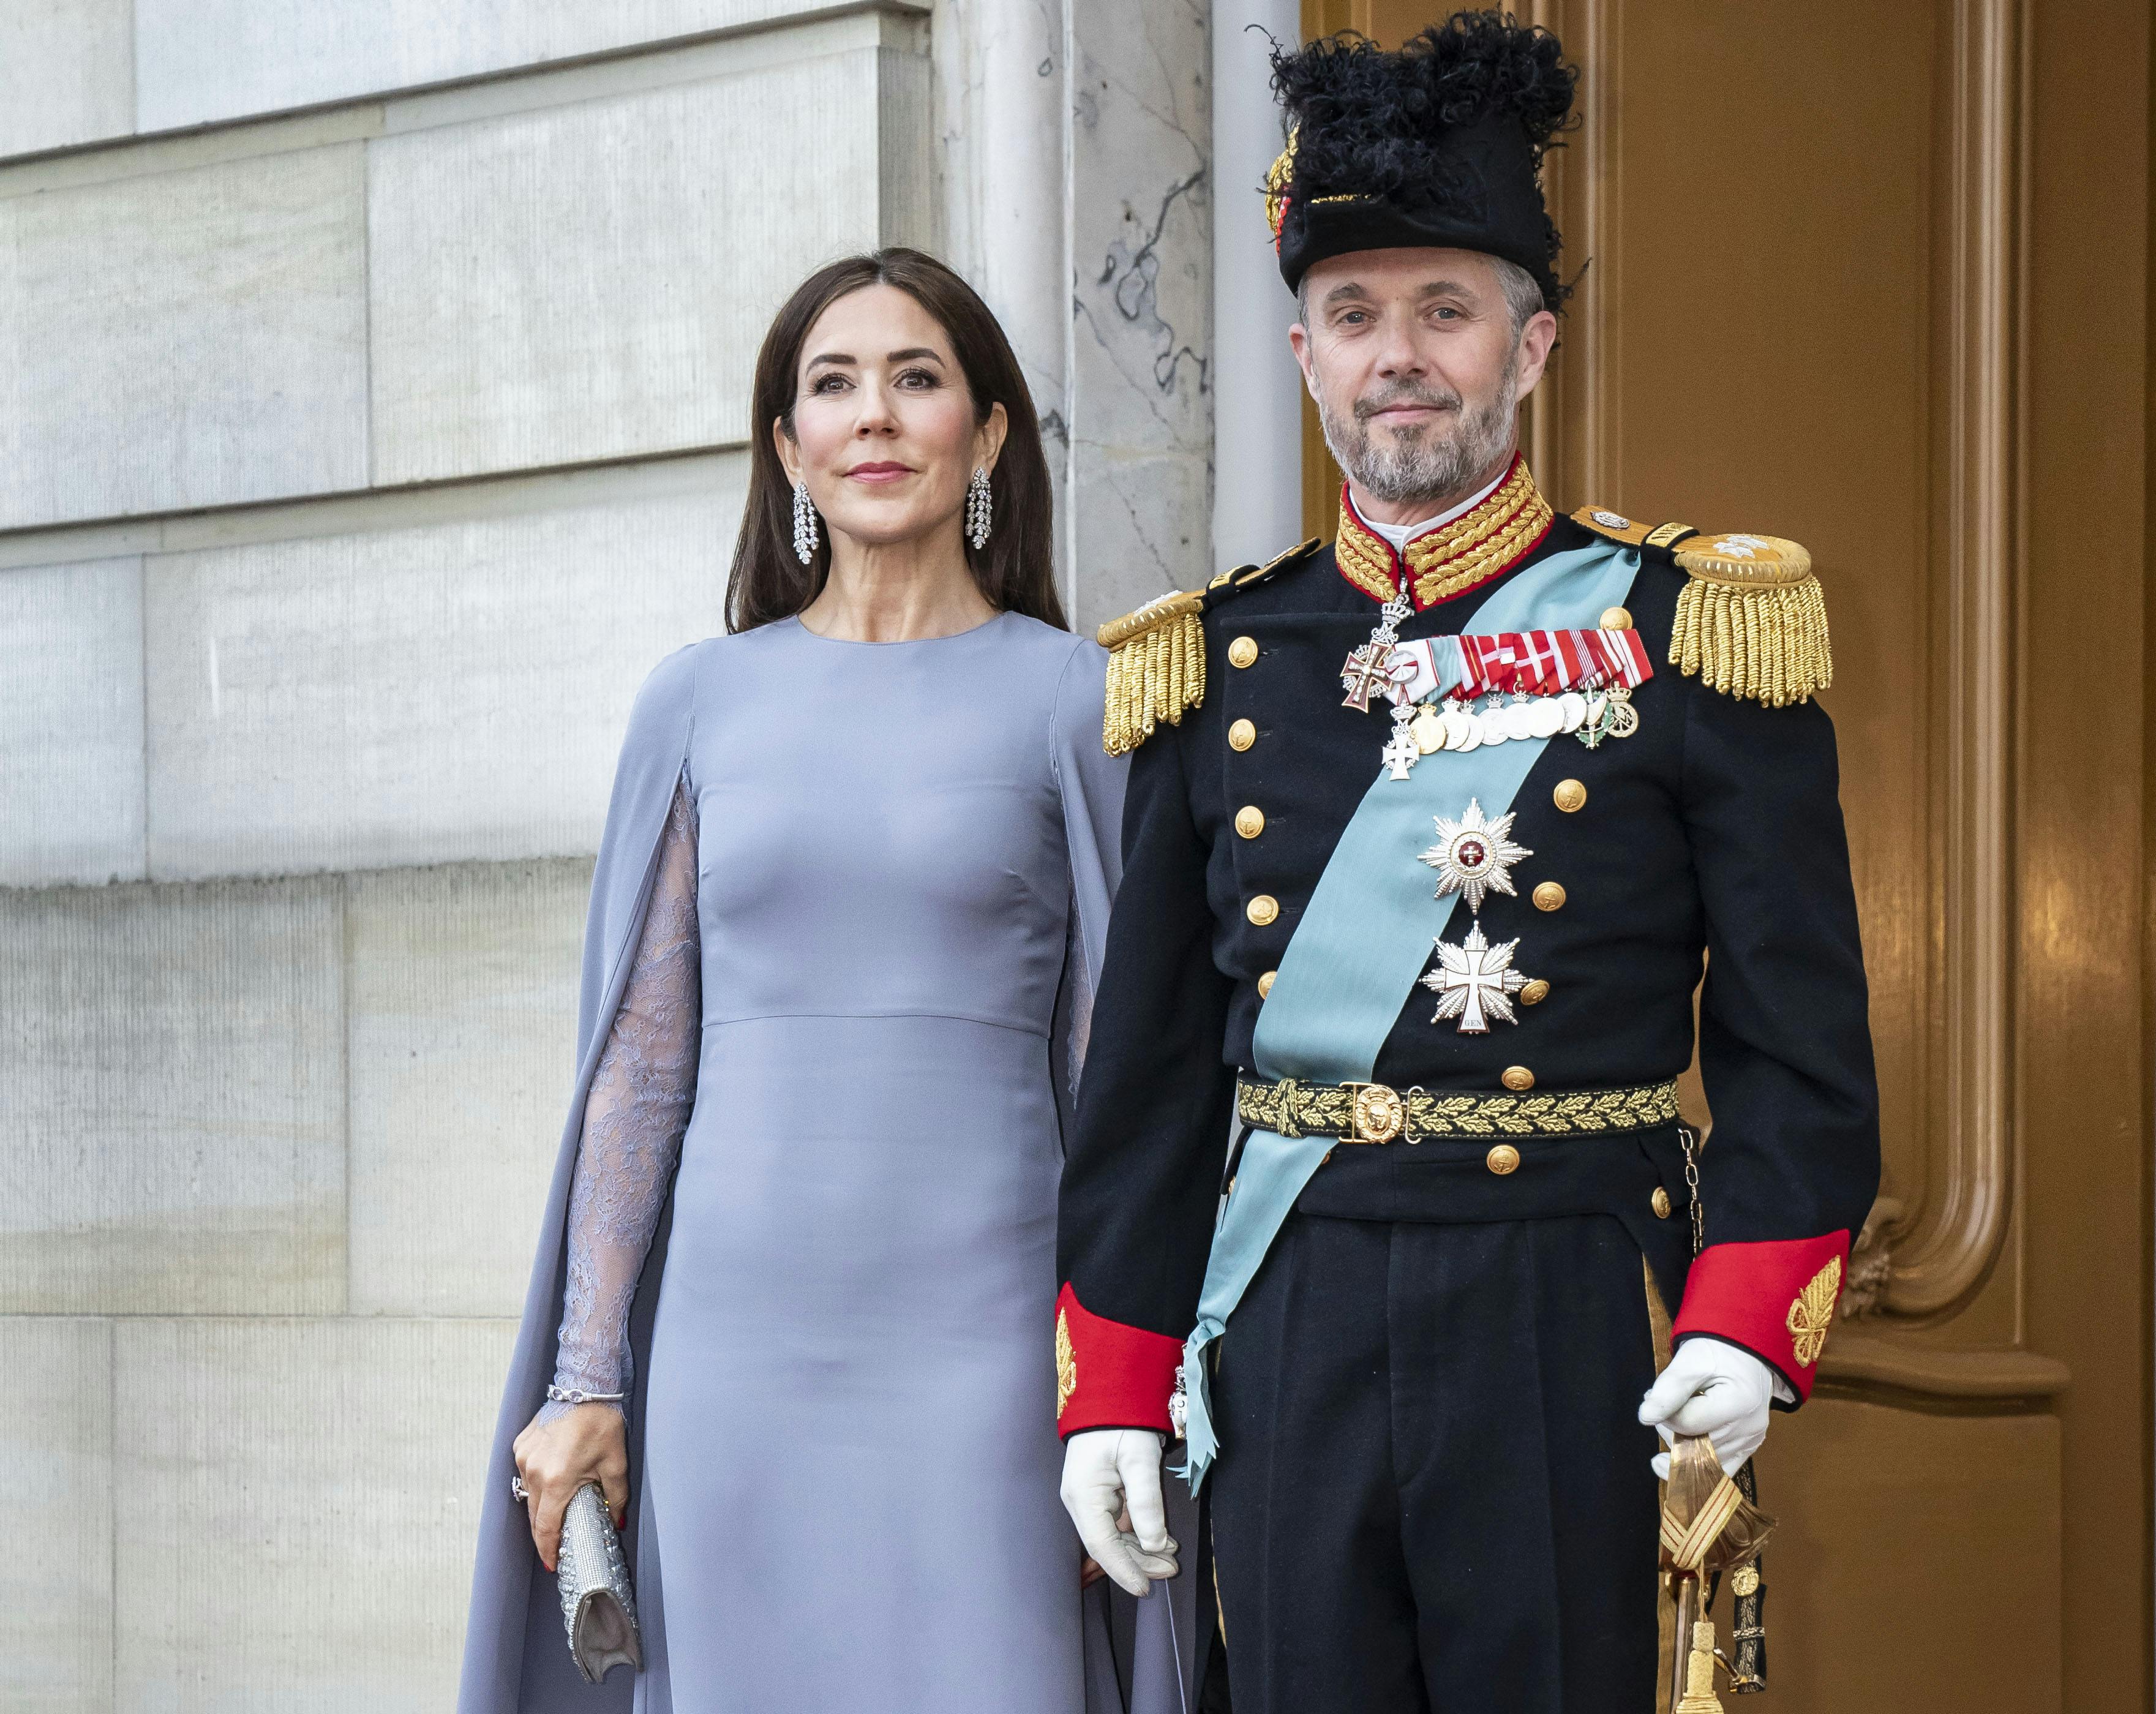 R føderation Addiction Kronprinsesse Mary strålede til gallamiddag: Har haft den smukke kjole på  før | SE og HØR